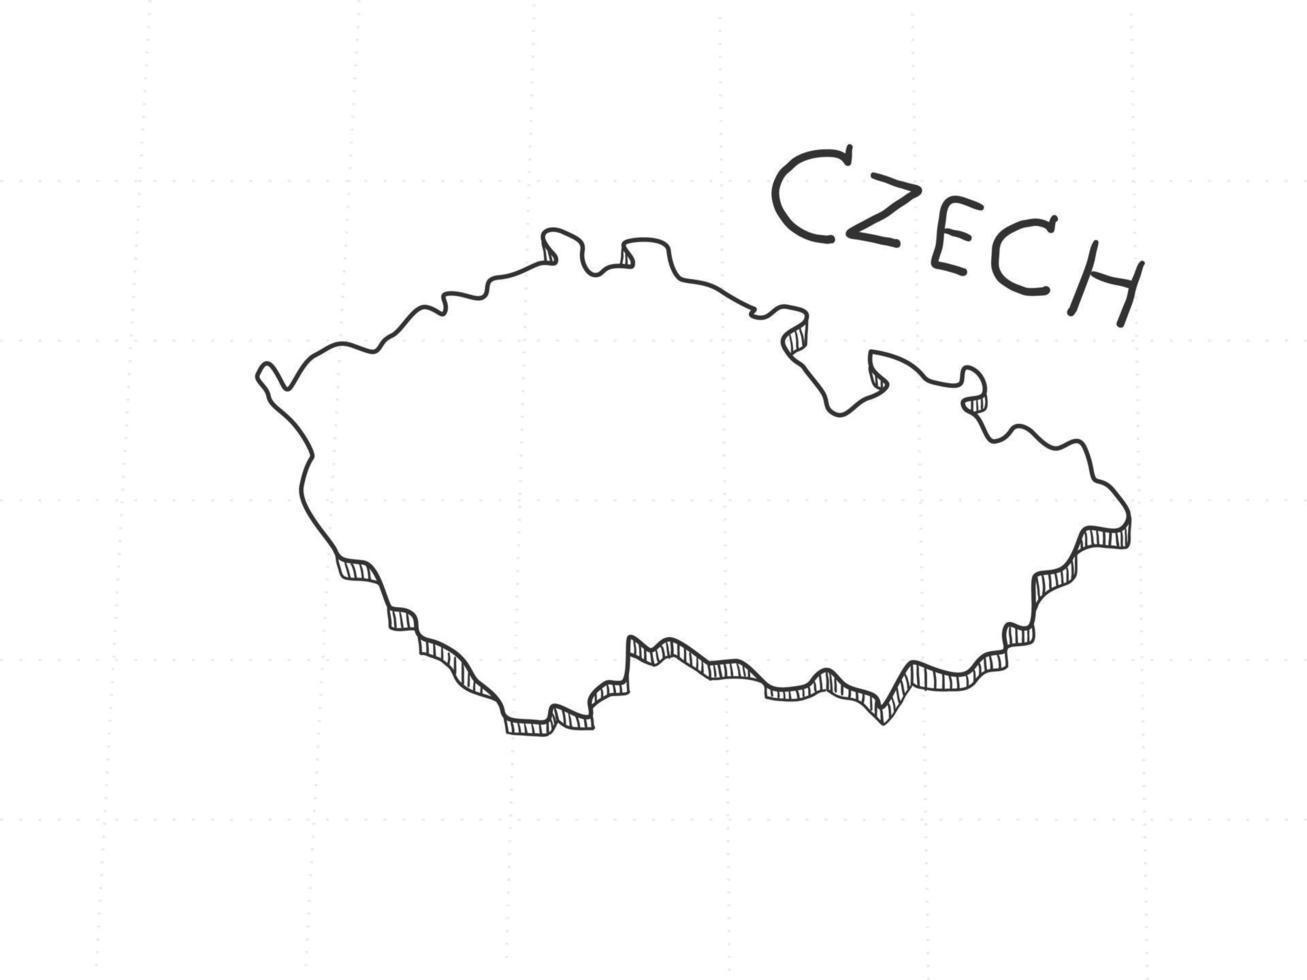 disegnato a mano della mappa ceca 3d su sfondo bianco. vettore